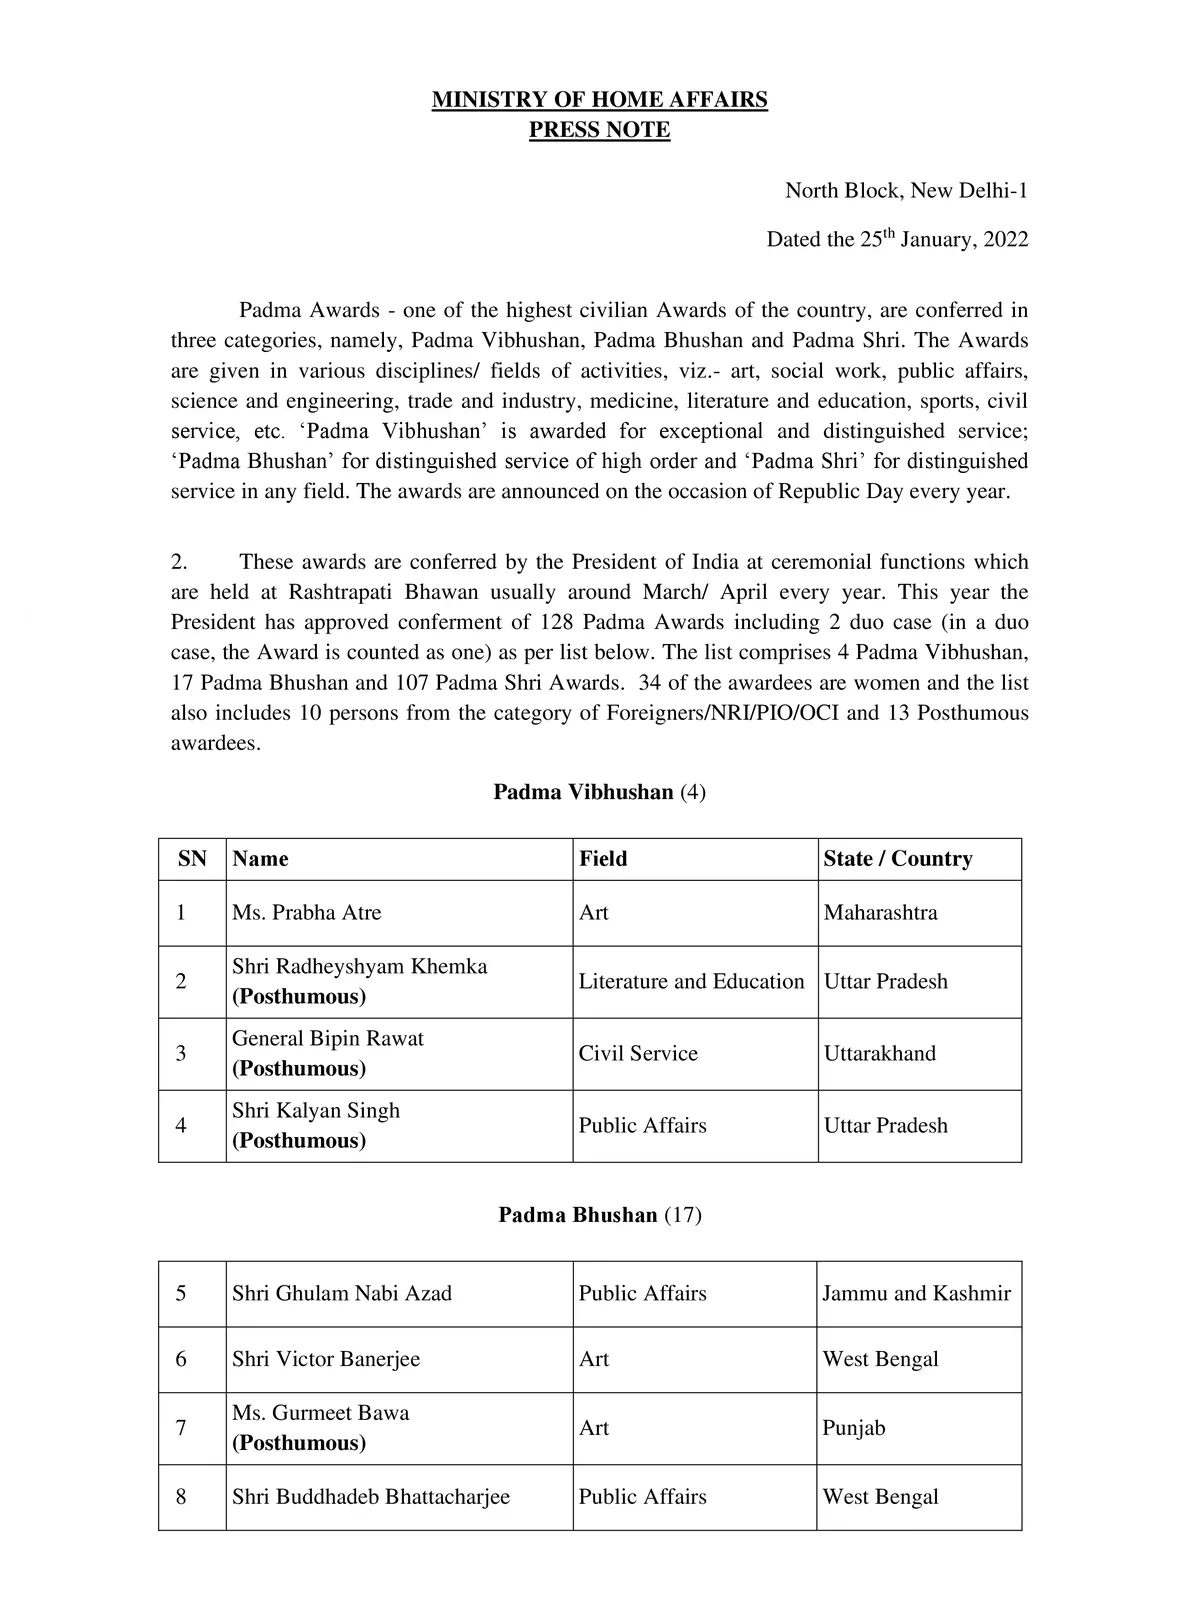 Padma Shri Awards 2022 Winners List